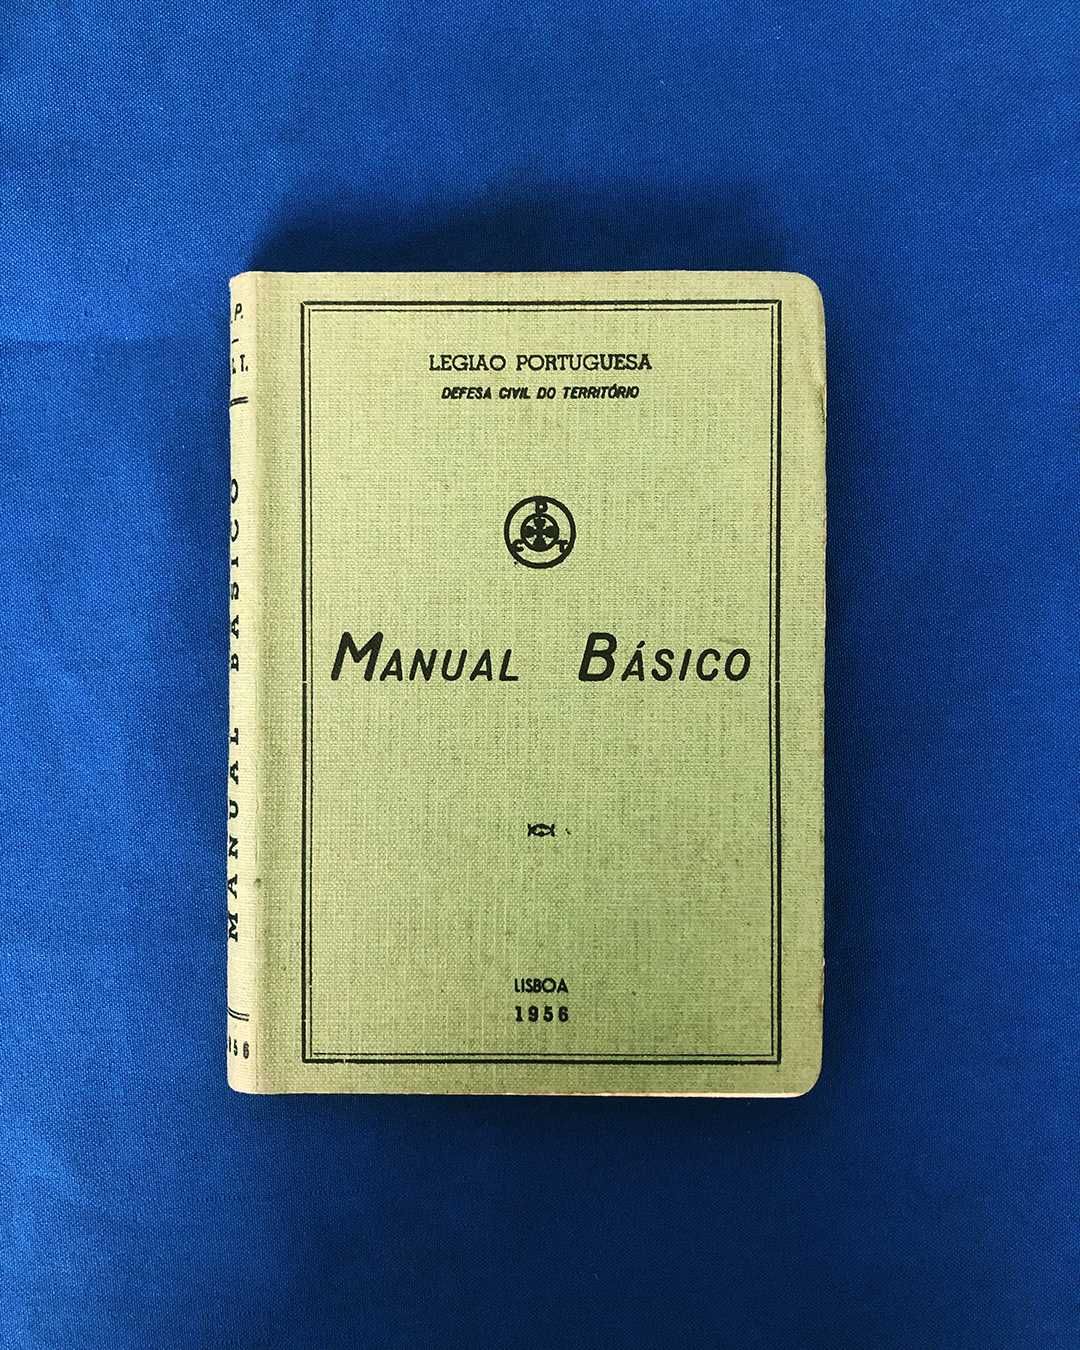 LEGIÃO PORTUGUESA Defesa Civil do território MANUAL BÁSICO 1956